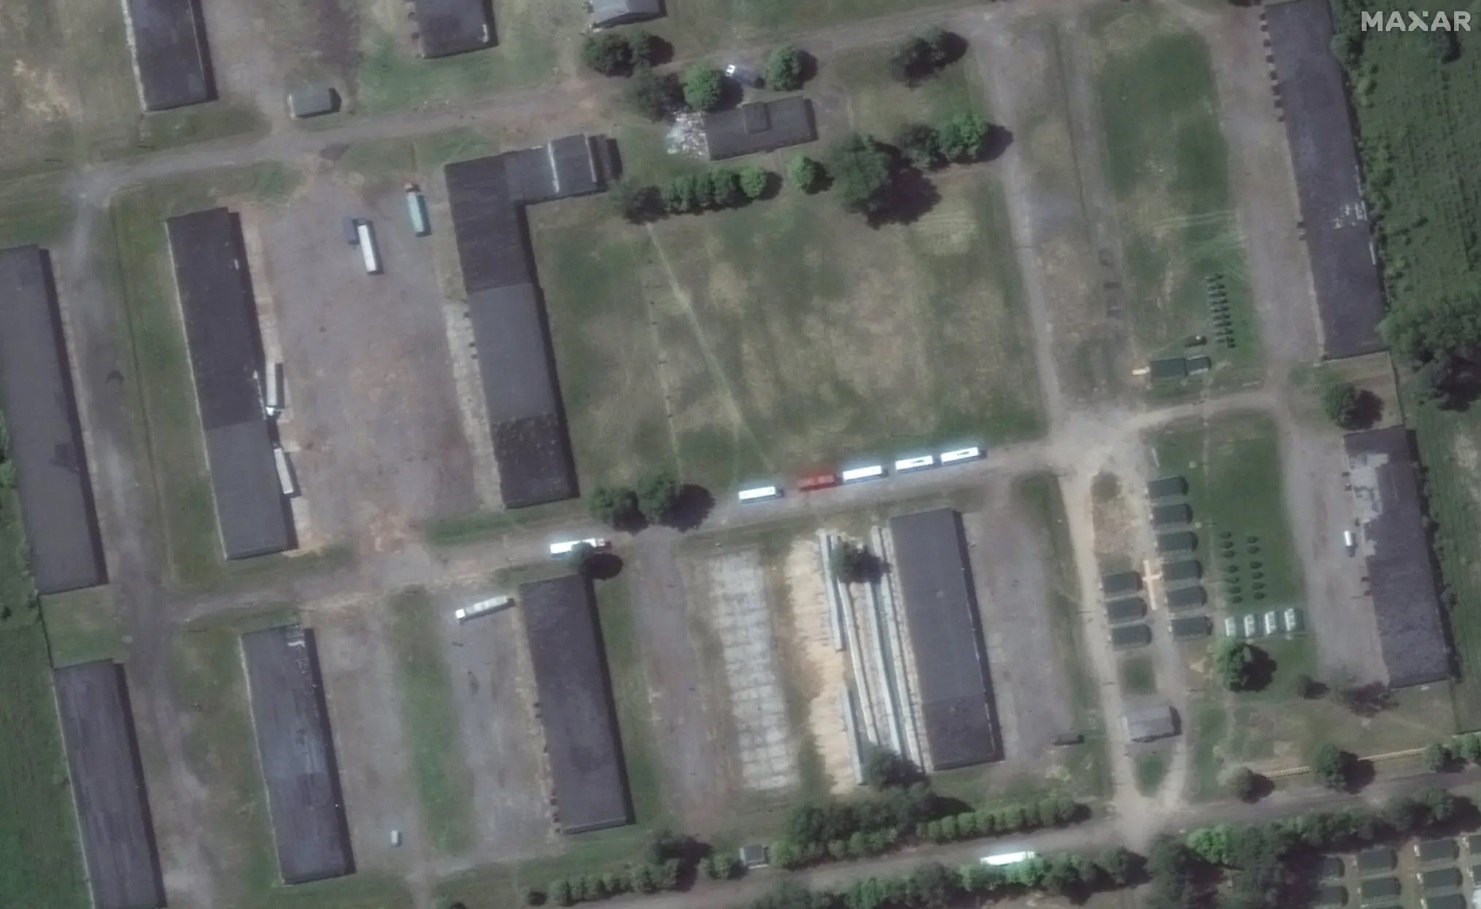 Появились новые спутниковые снимки базы ЧВК "Вагнер" в Беларуси